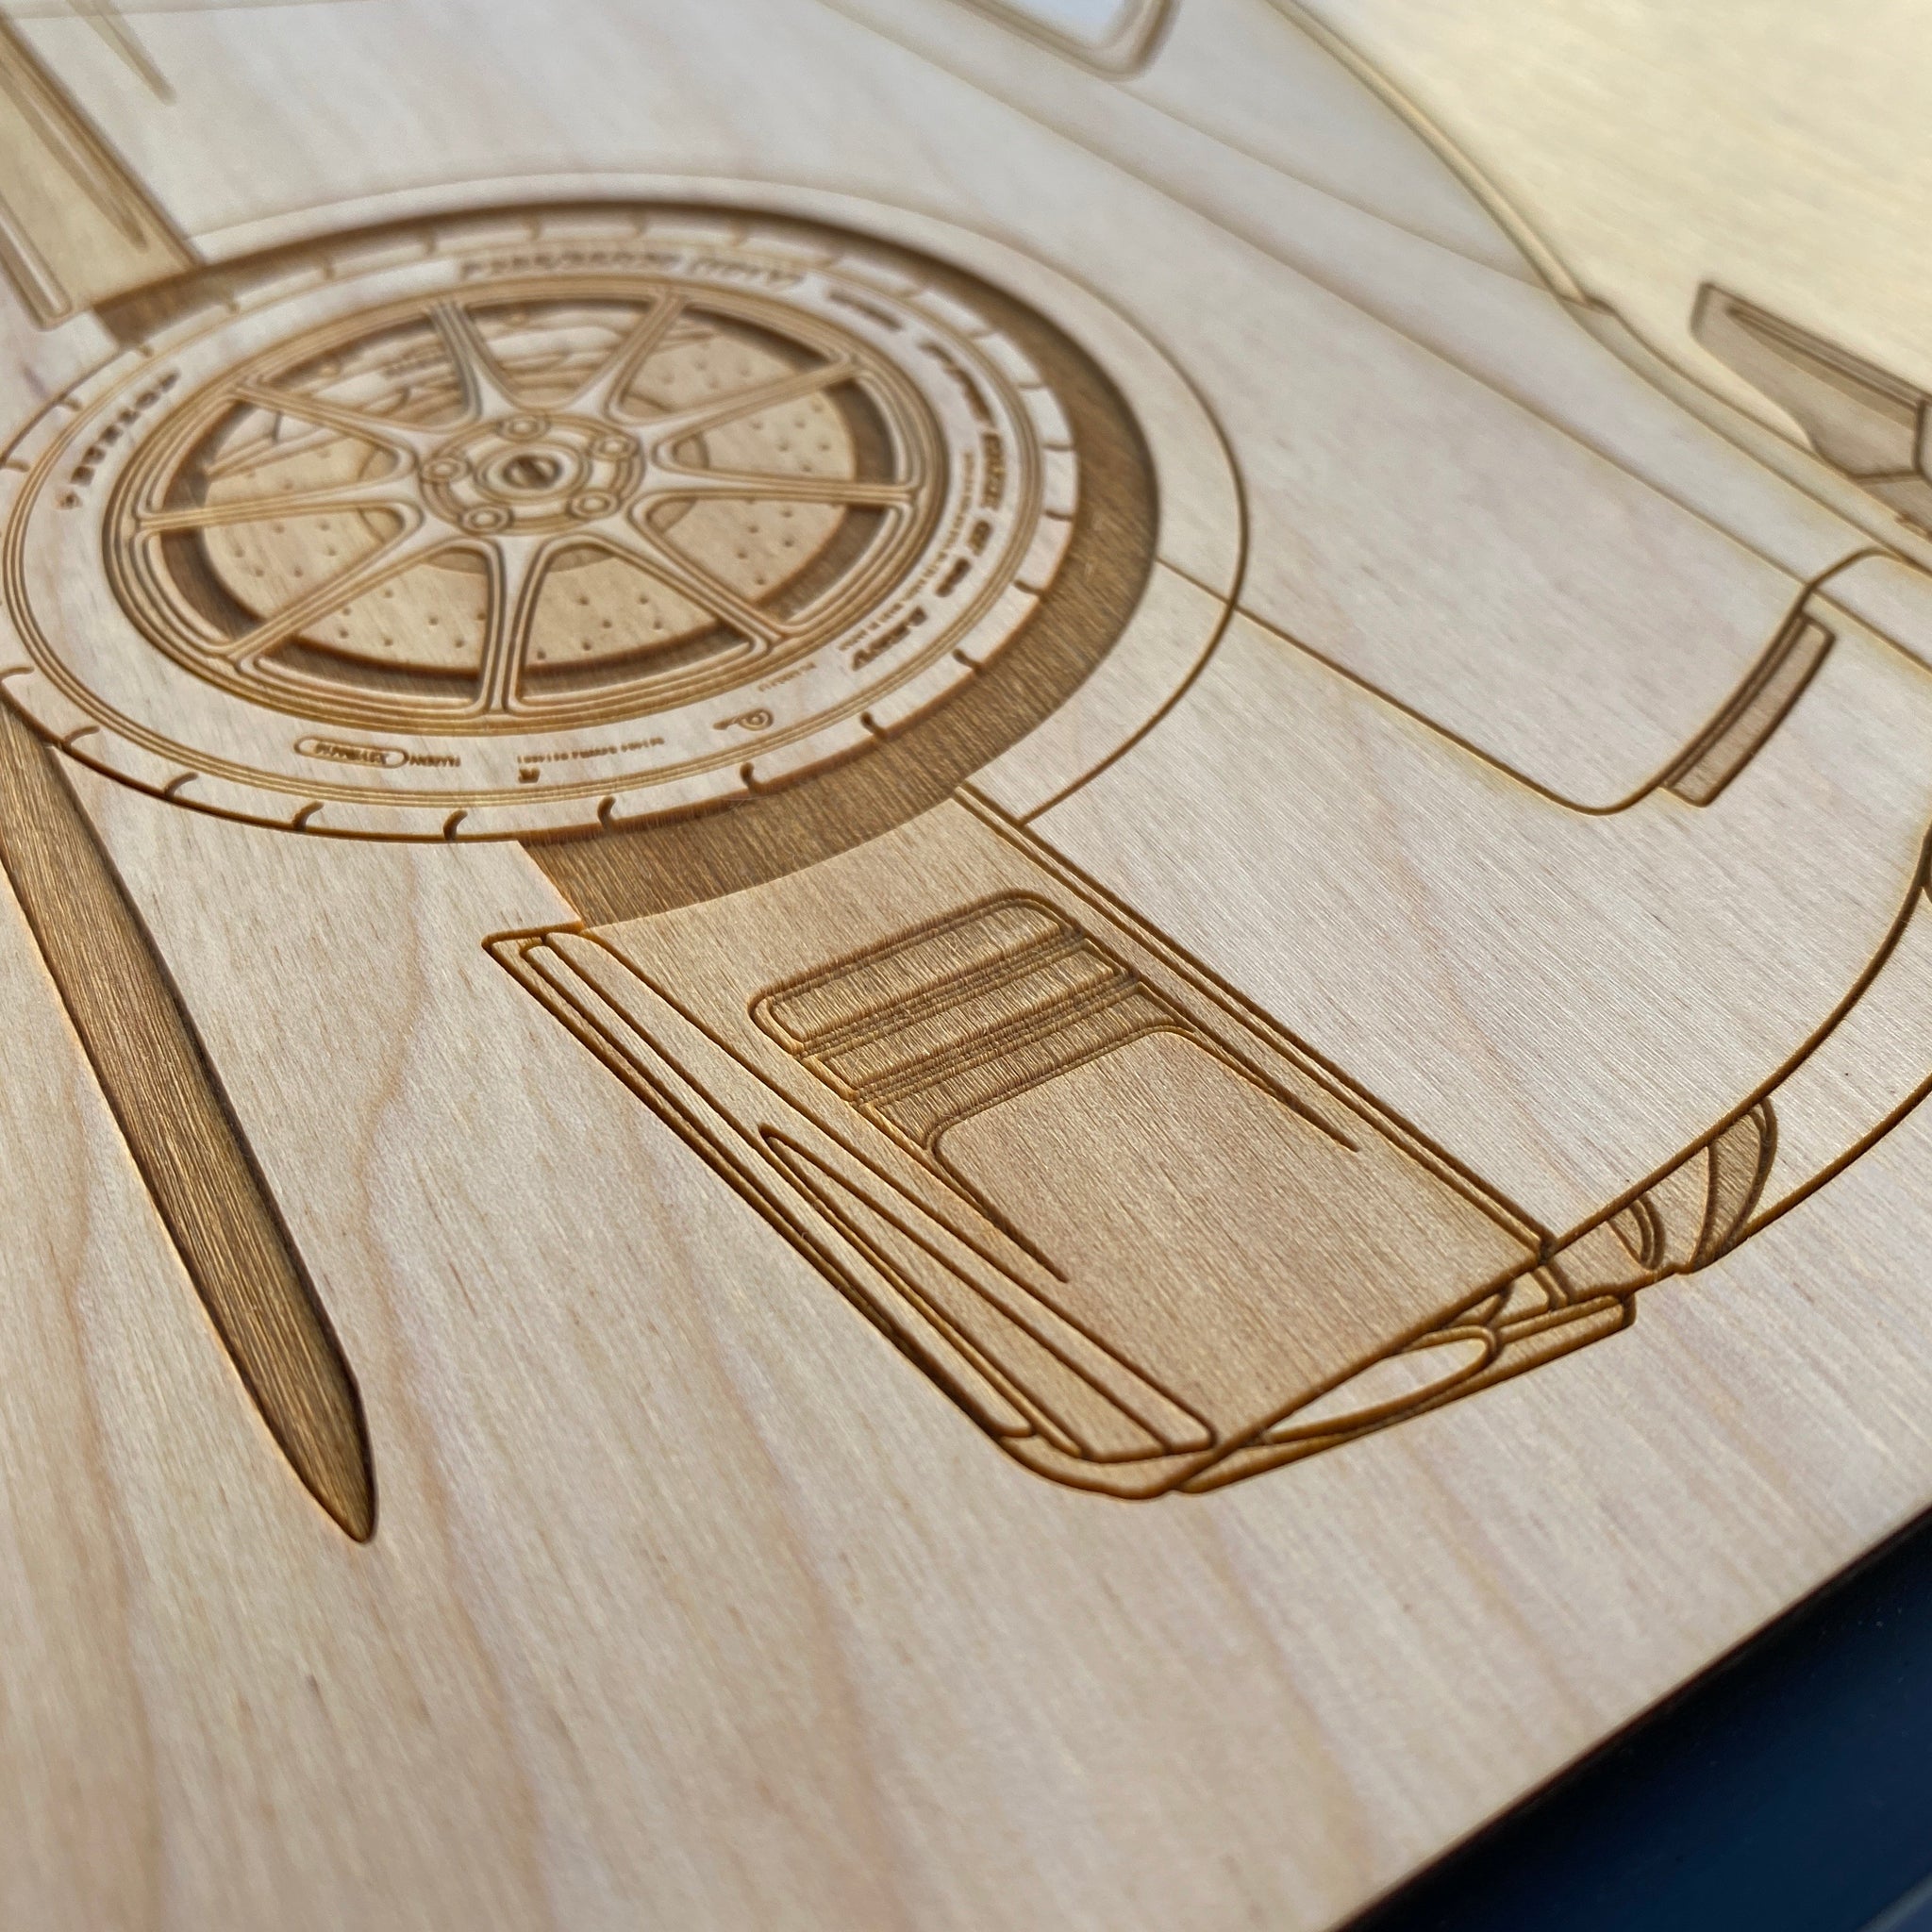 Star Wars Coasters, engraved wall art, custom engraved wood